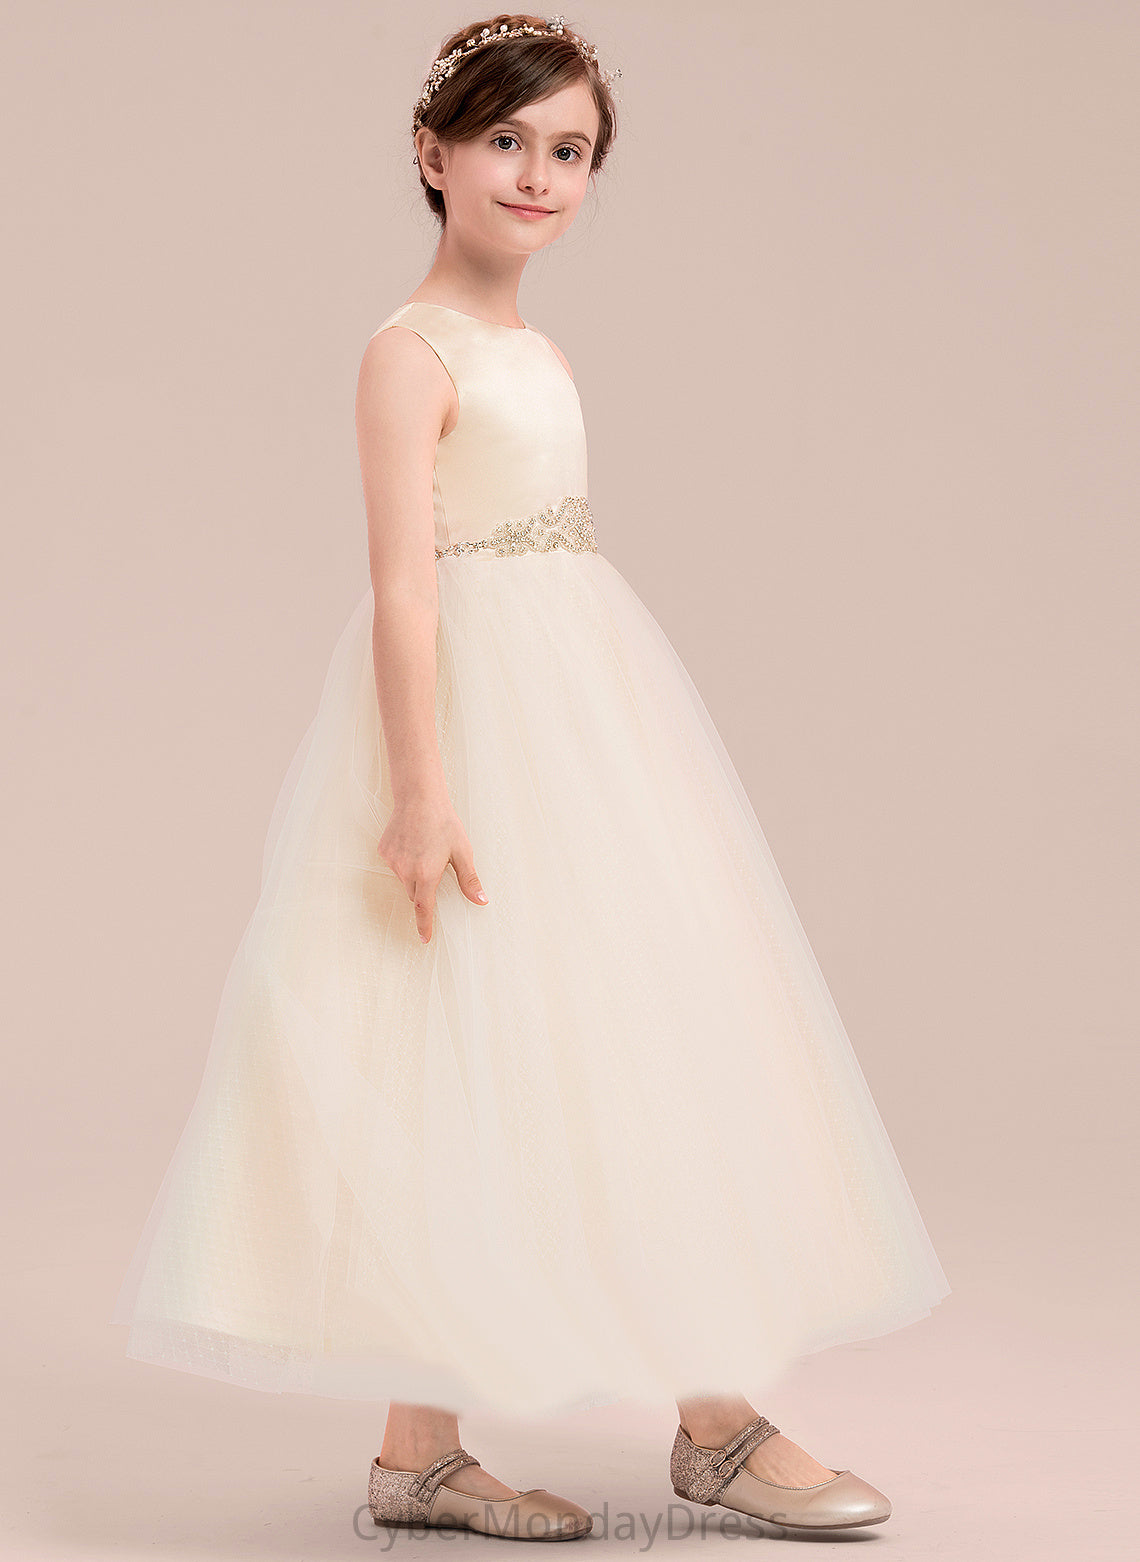 Satin/Tulle Scoop Patsy - Flower Girl Dresses With Dress Neck A-Line Beading Girl Ankle-length Sleeveless Flower